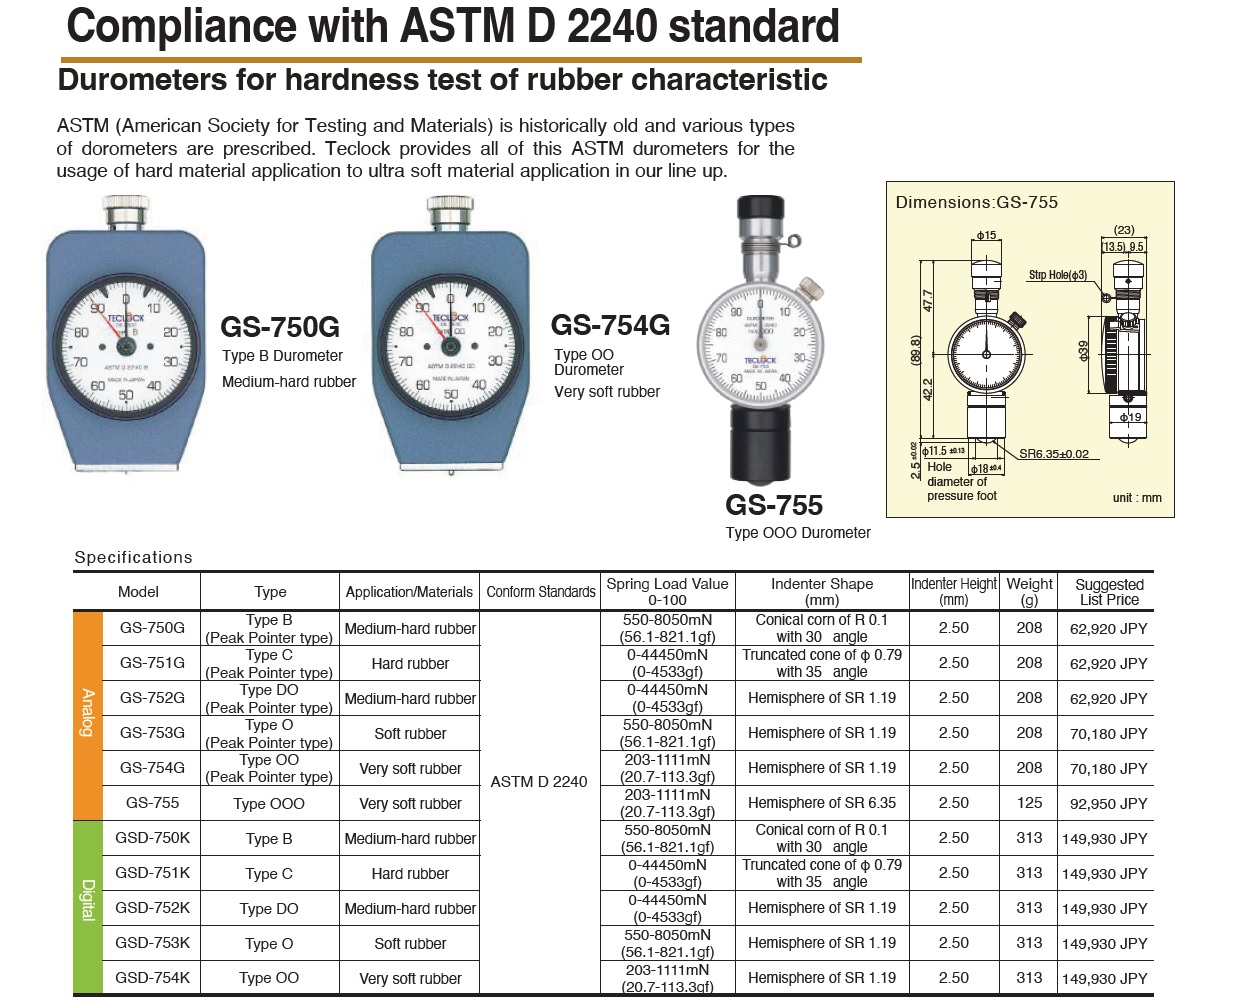 テクロック GS-752G タイプDO ASTM D 2240準拠アナログデュロメータ